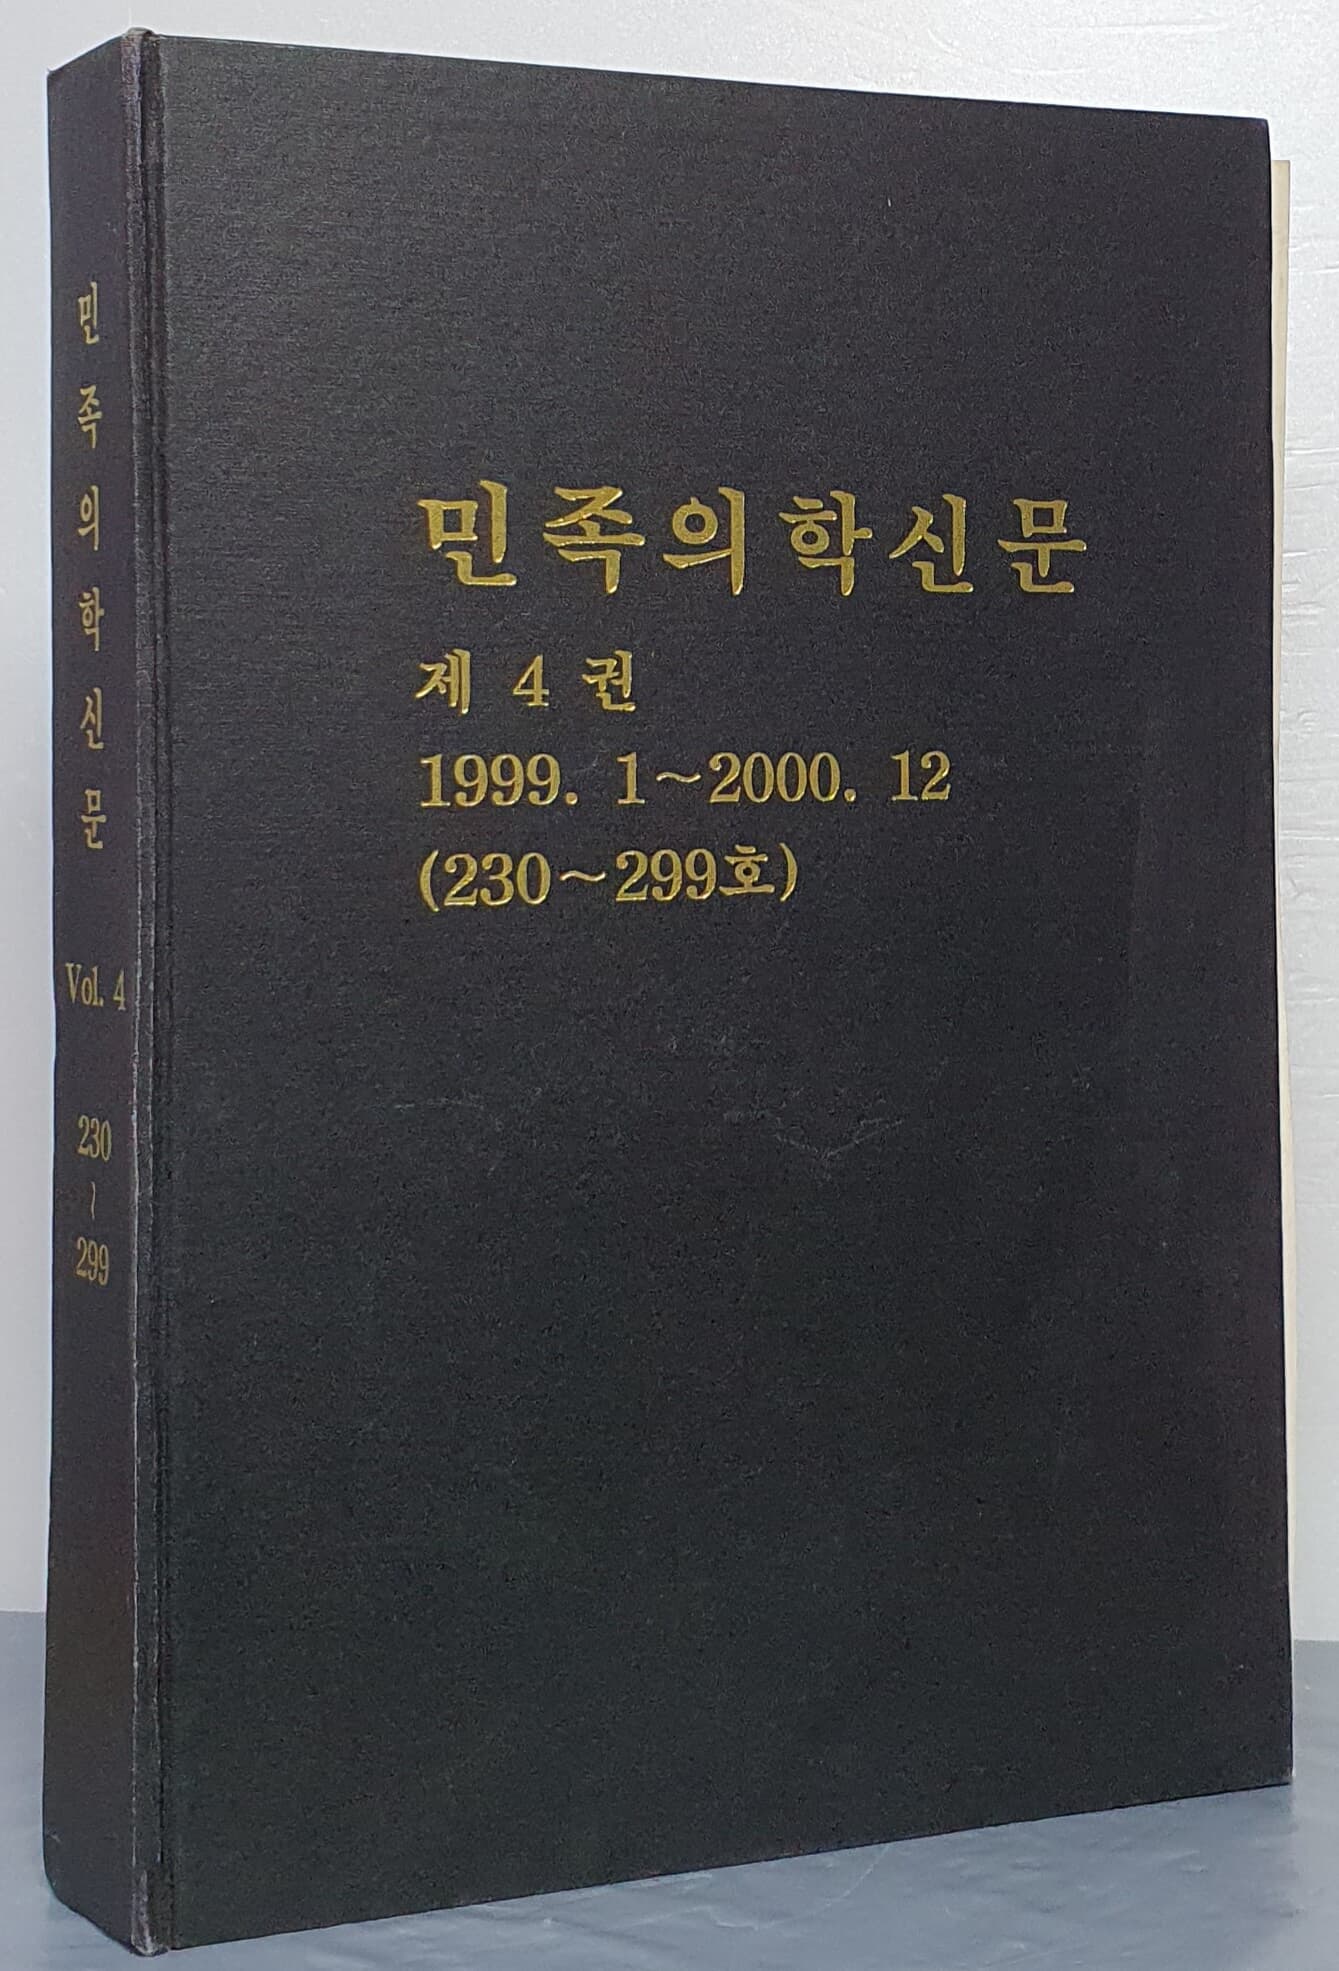 민족의학신문 제4권 1999.1~2000.12 (230~299호)